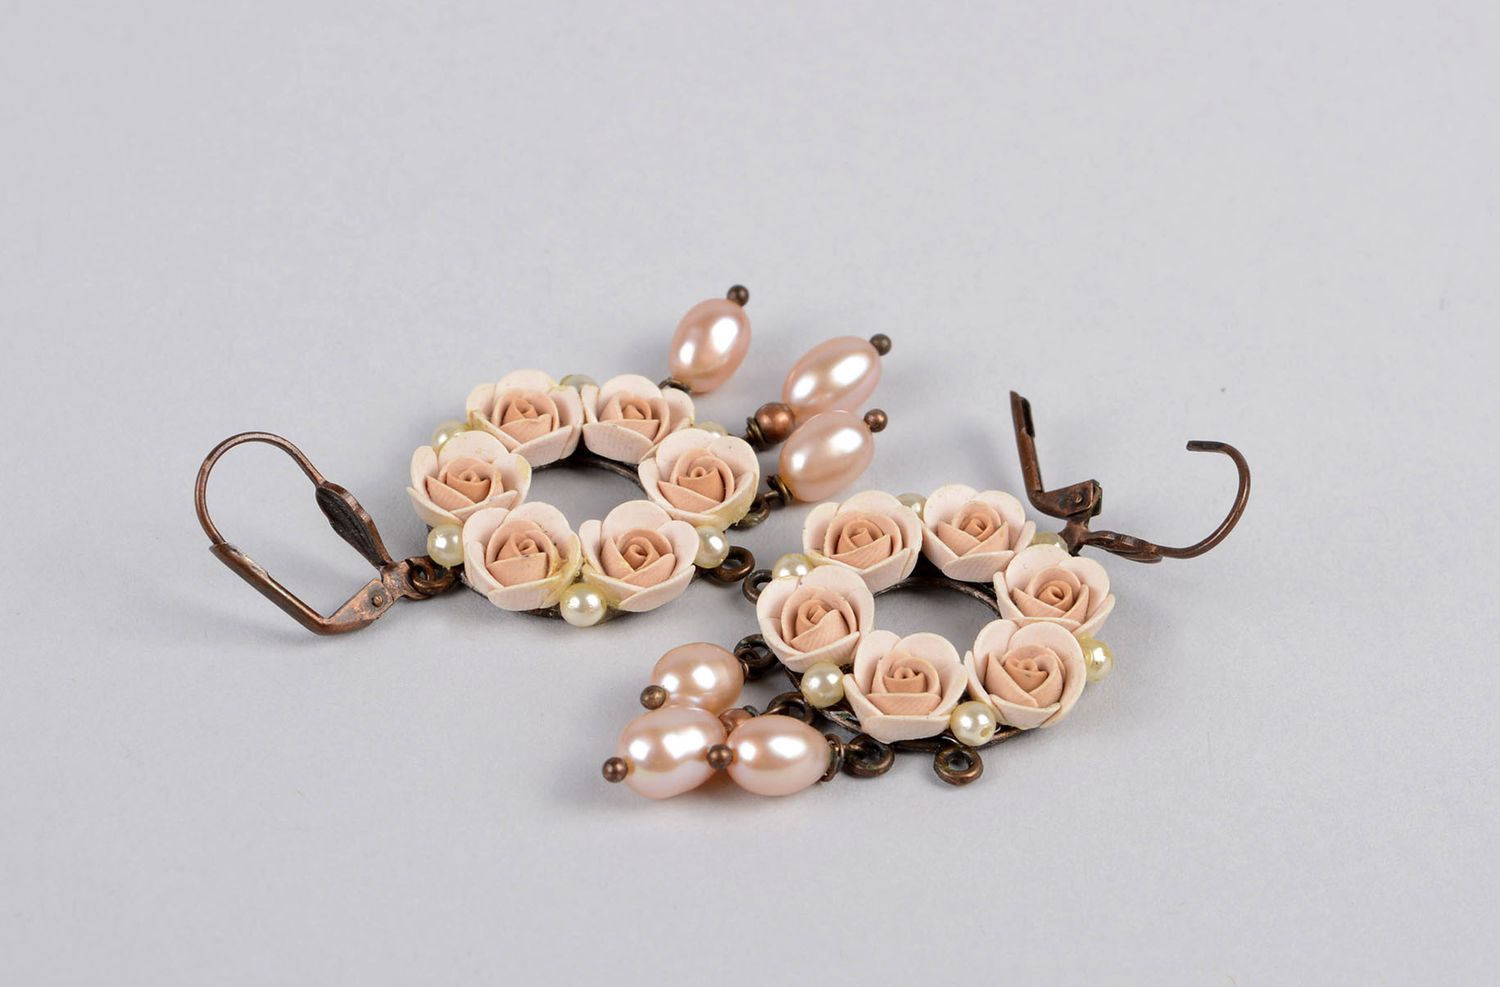 Элитная бижутерия хэнд мейд модные серьги с розами украшение ручной работы  фото 3